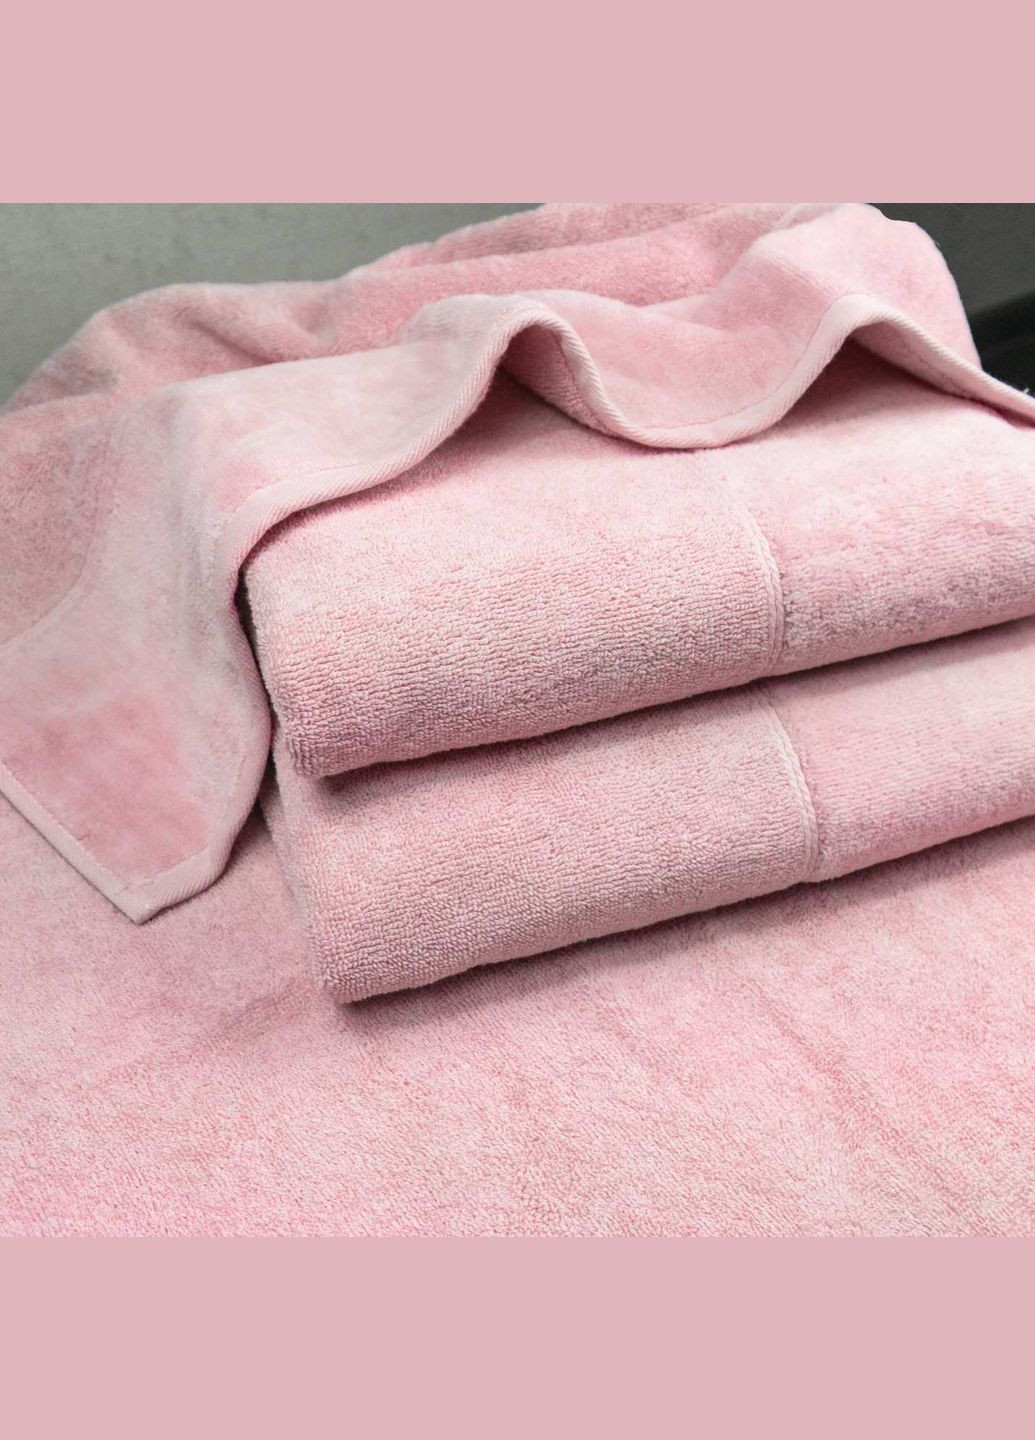 GM Textile банное полотенце махра/велюр 70x140см премиум качества milado 550г/м2 () розовый производство -